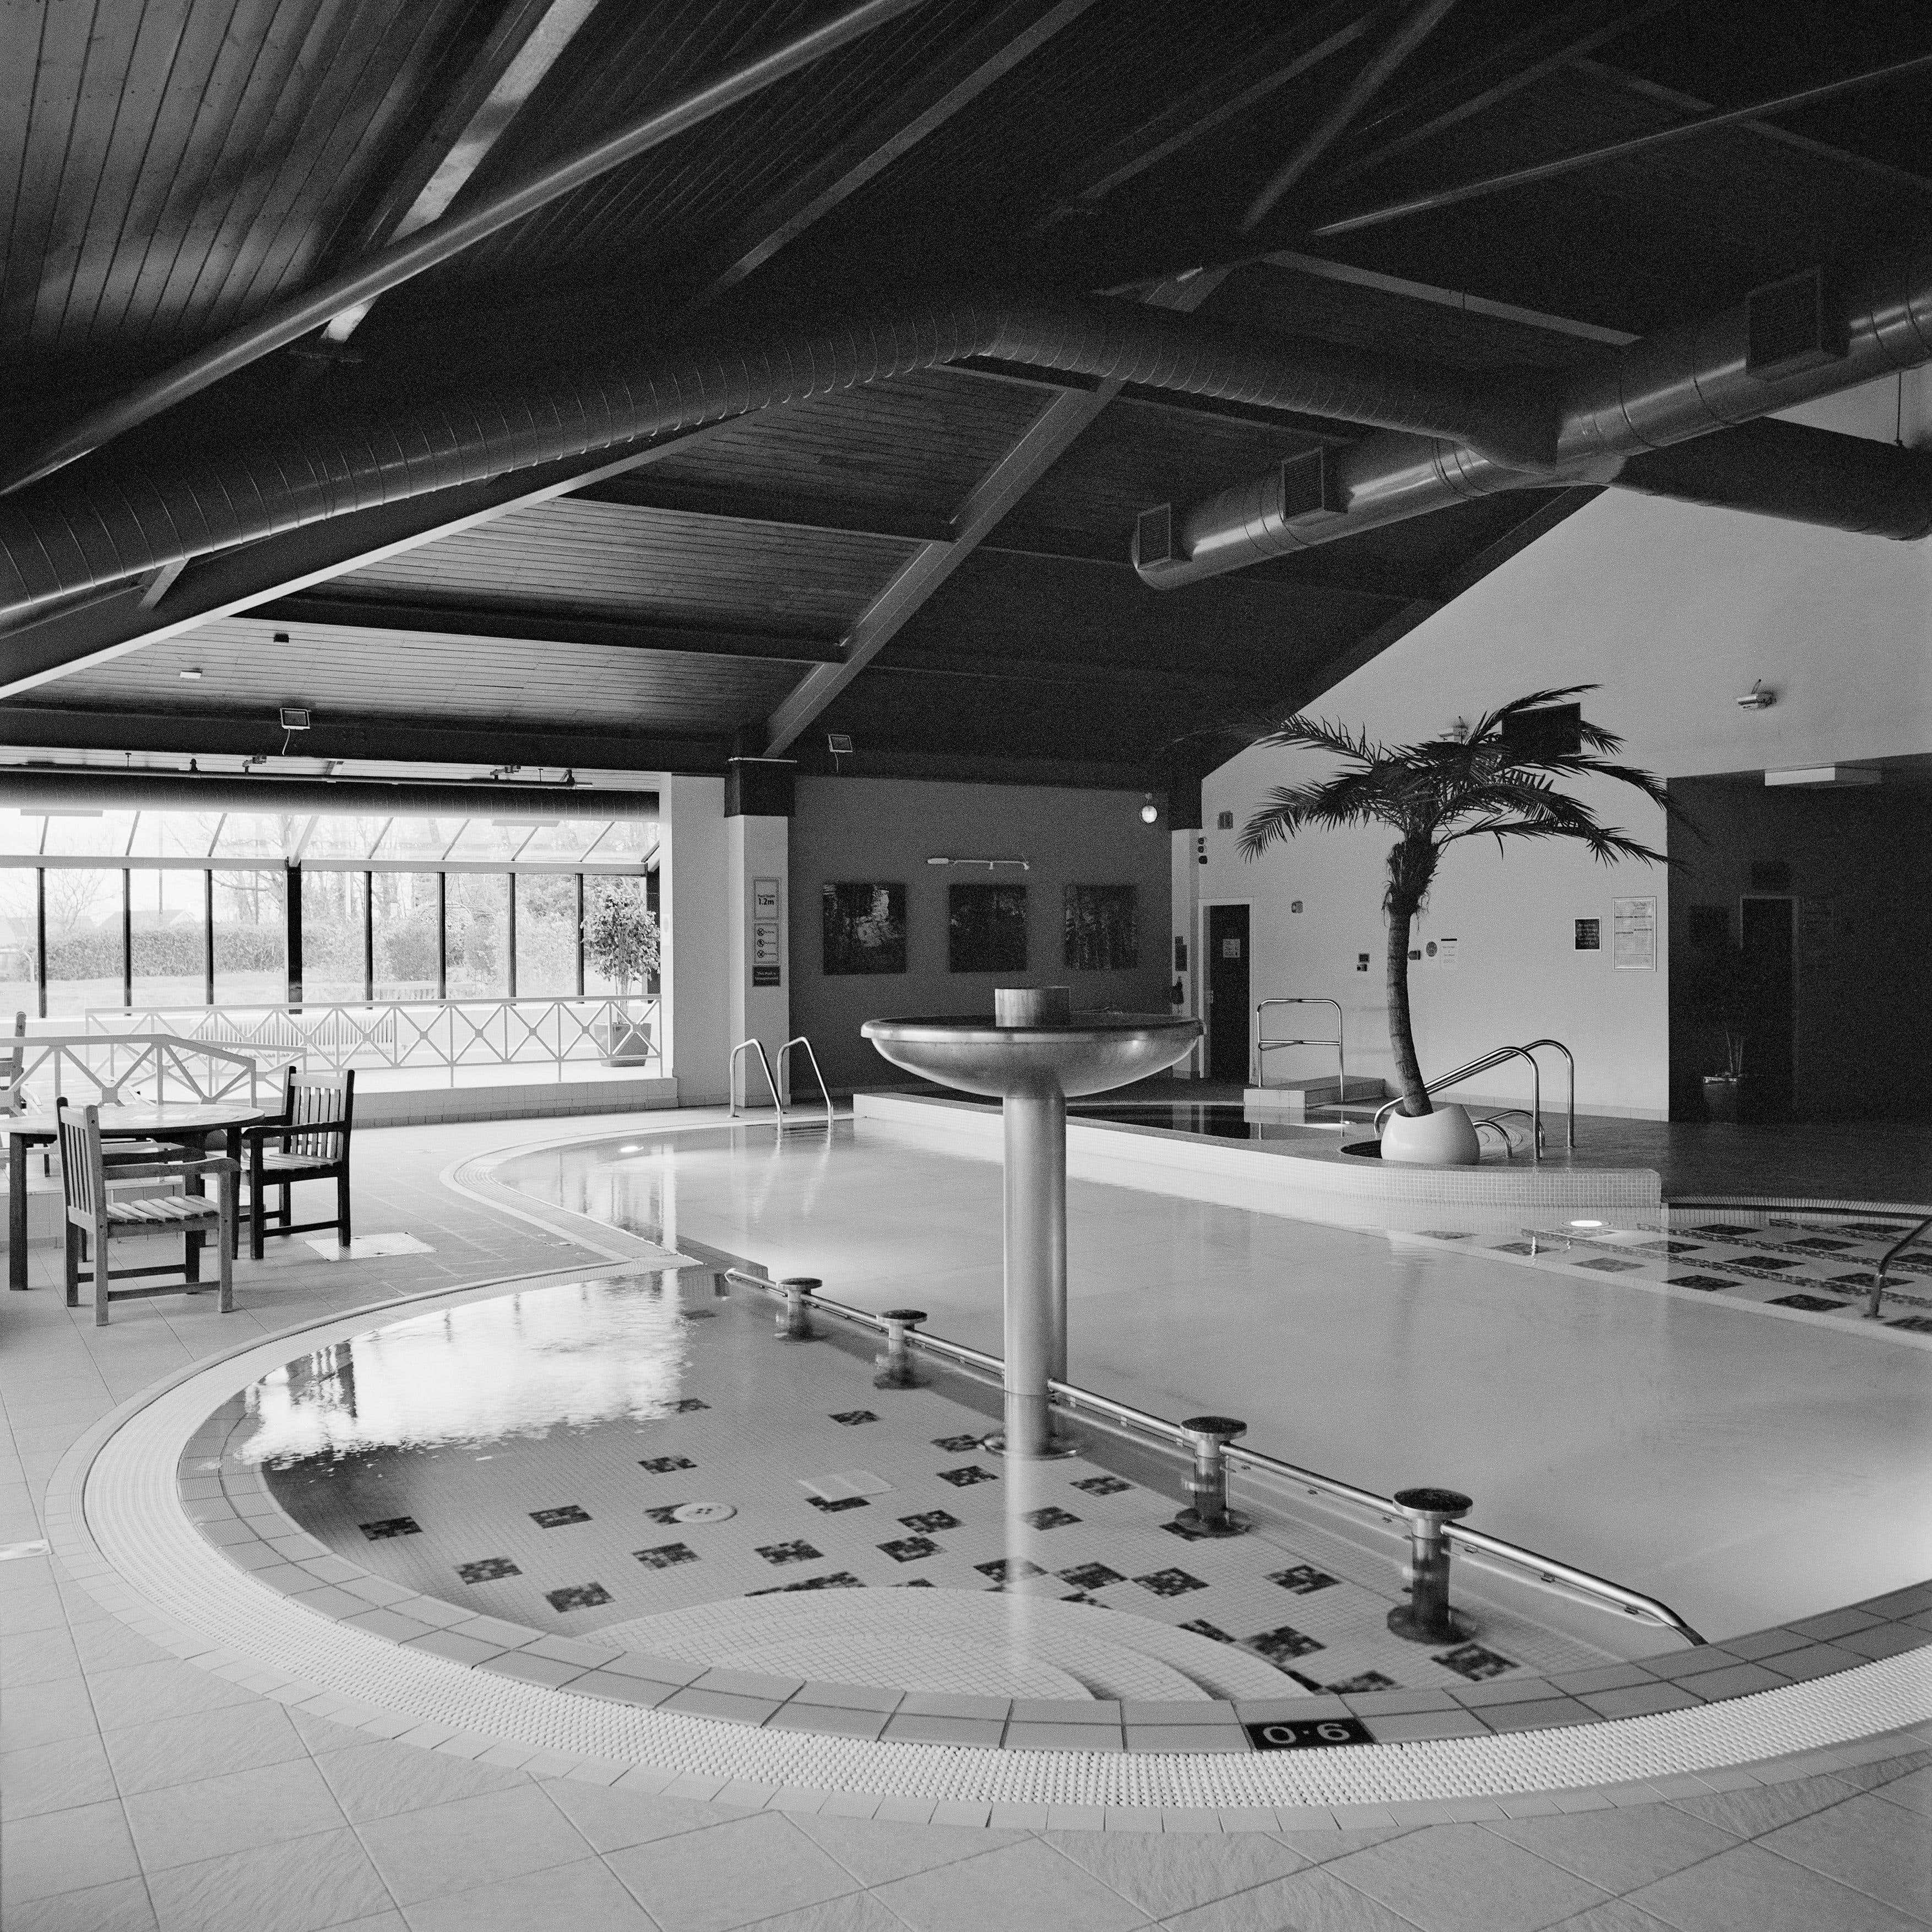 Monochrome quadratische architektonische Fotografie: Swimming Pool-Design mit Brunnen